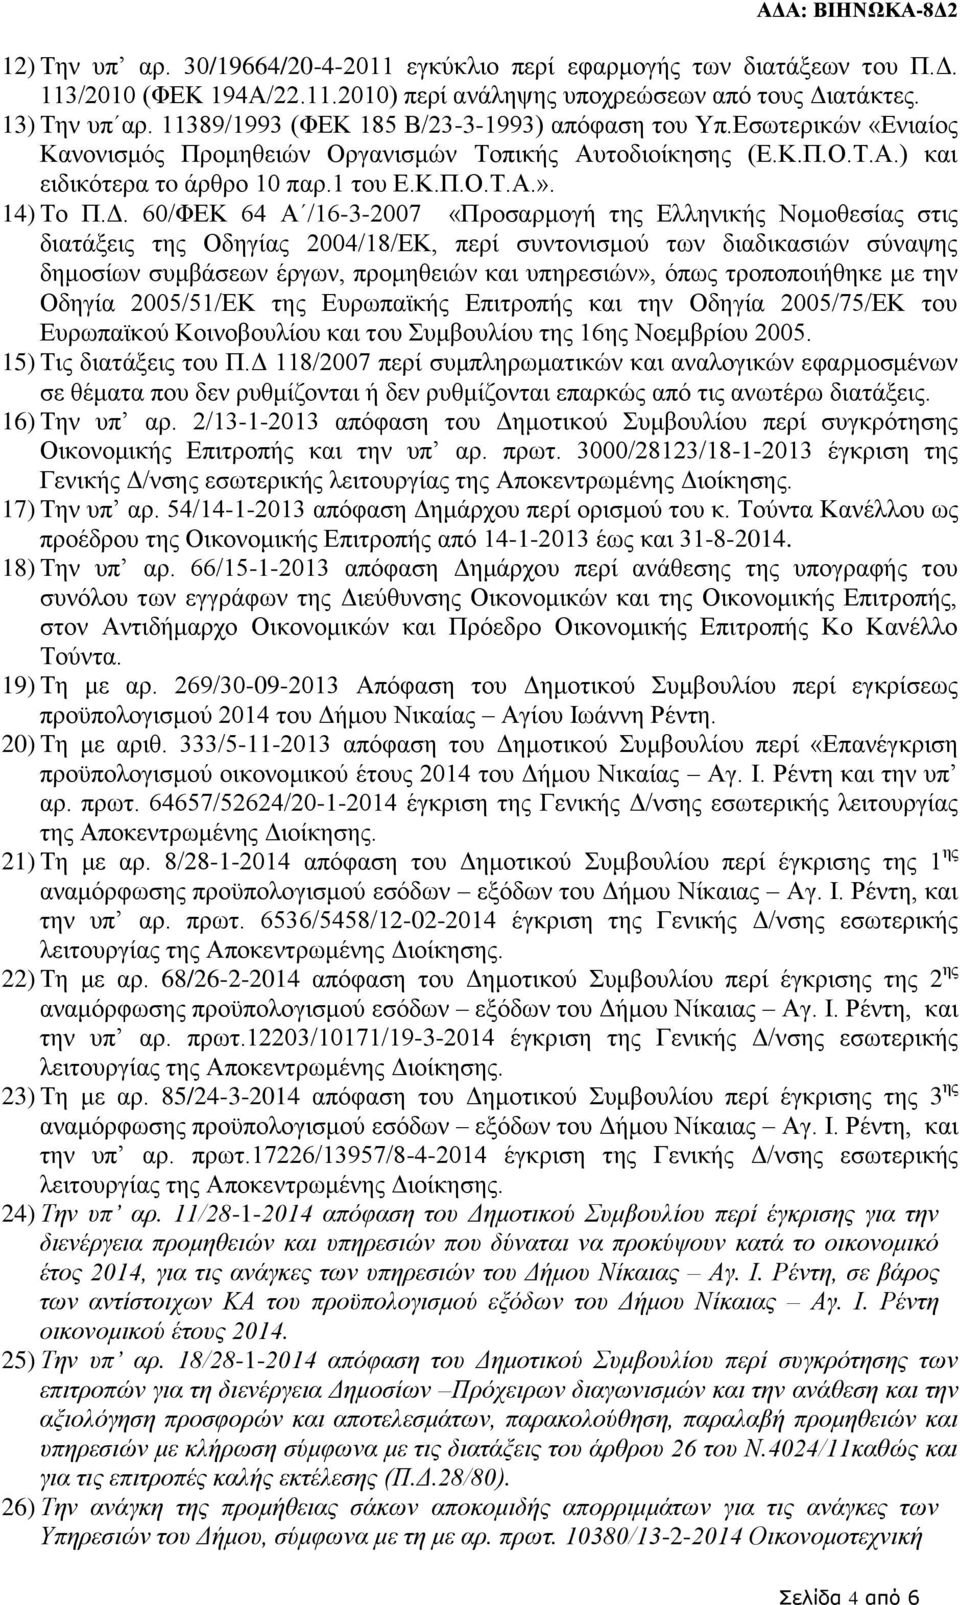 Δ. 60/ΦΕΚ 64 Α /16-3-2007 «Προσαρμογή της Ελληνικής Νομοθεσίας στις διατάξεις της Οδηγίας 2004/18/ΕΚ, περί συντονισμού των διαδικασιών σύναψης δημοσίων συμβάσεων έργων, προμηθειών και υπηρεσιών»,